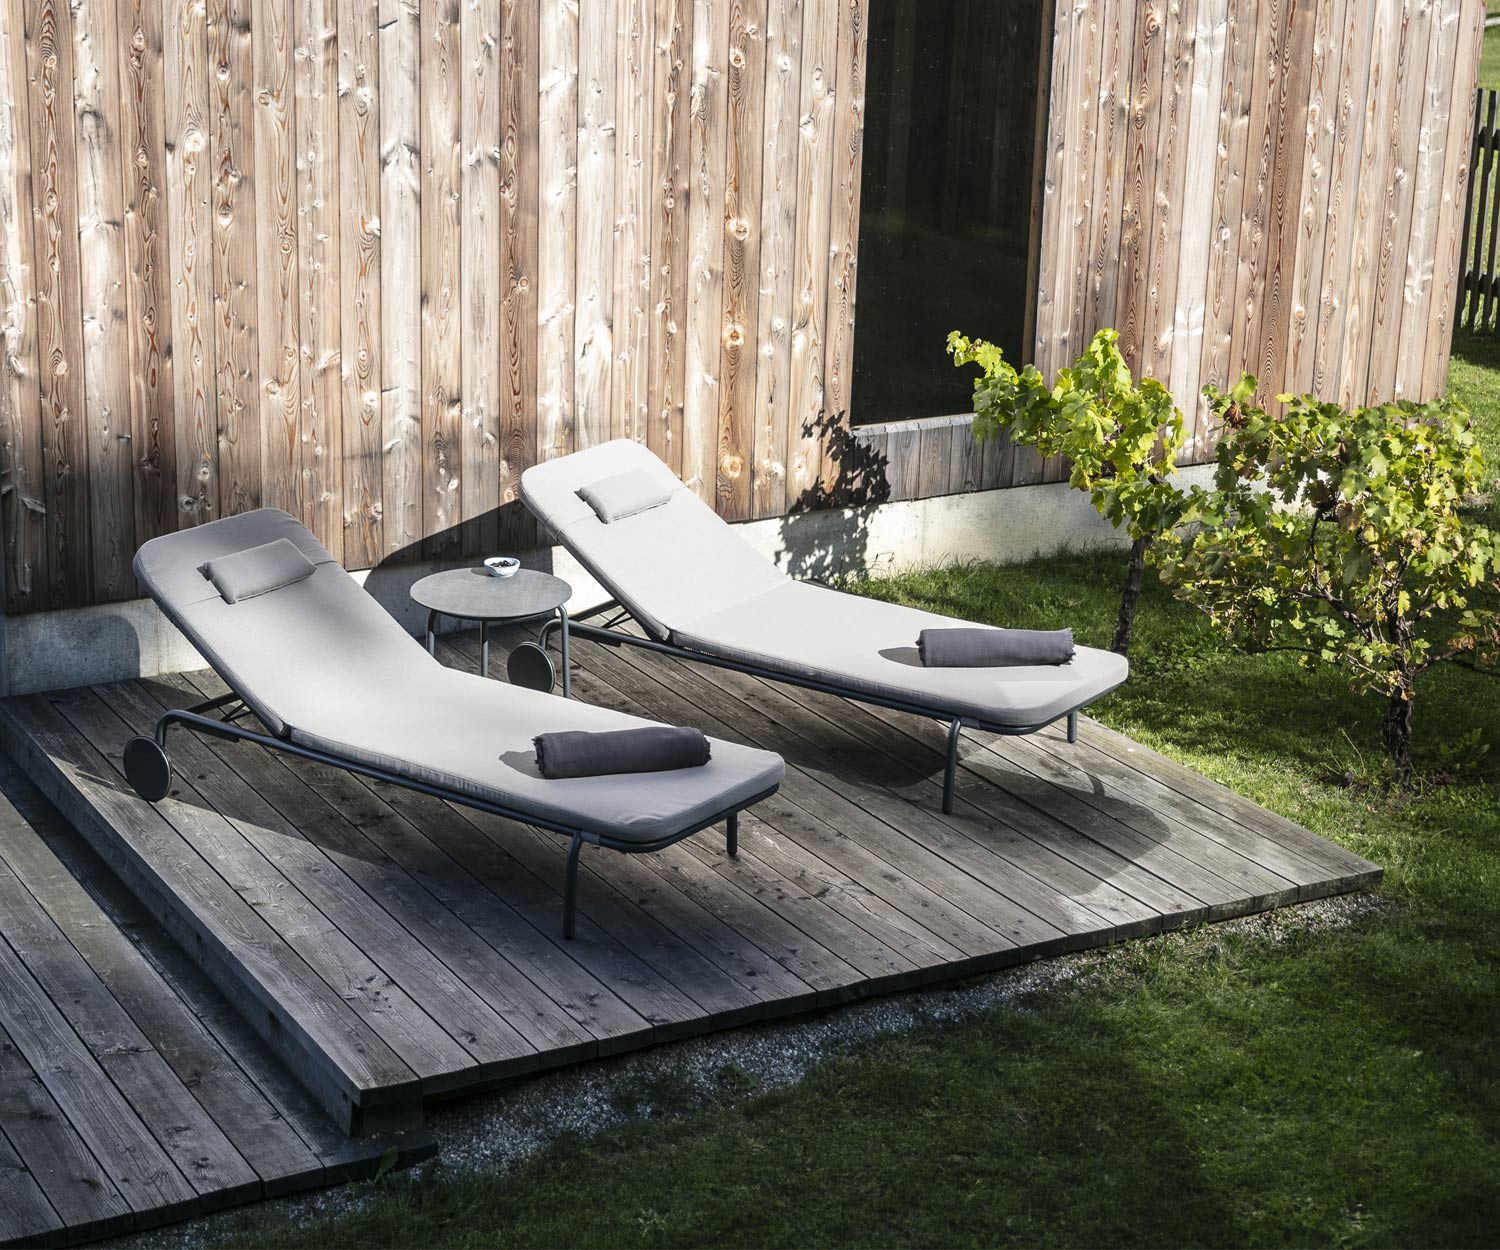 Todus Starling Design tuinstoel in duo op de houten veranda met witte stoffen bekleding